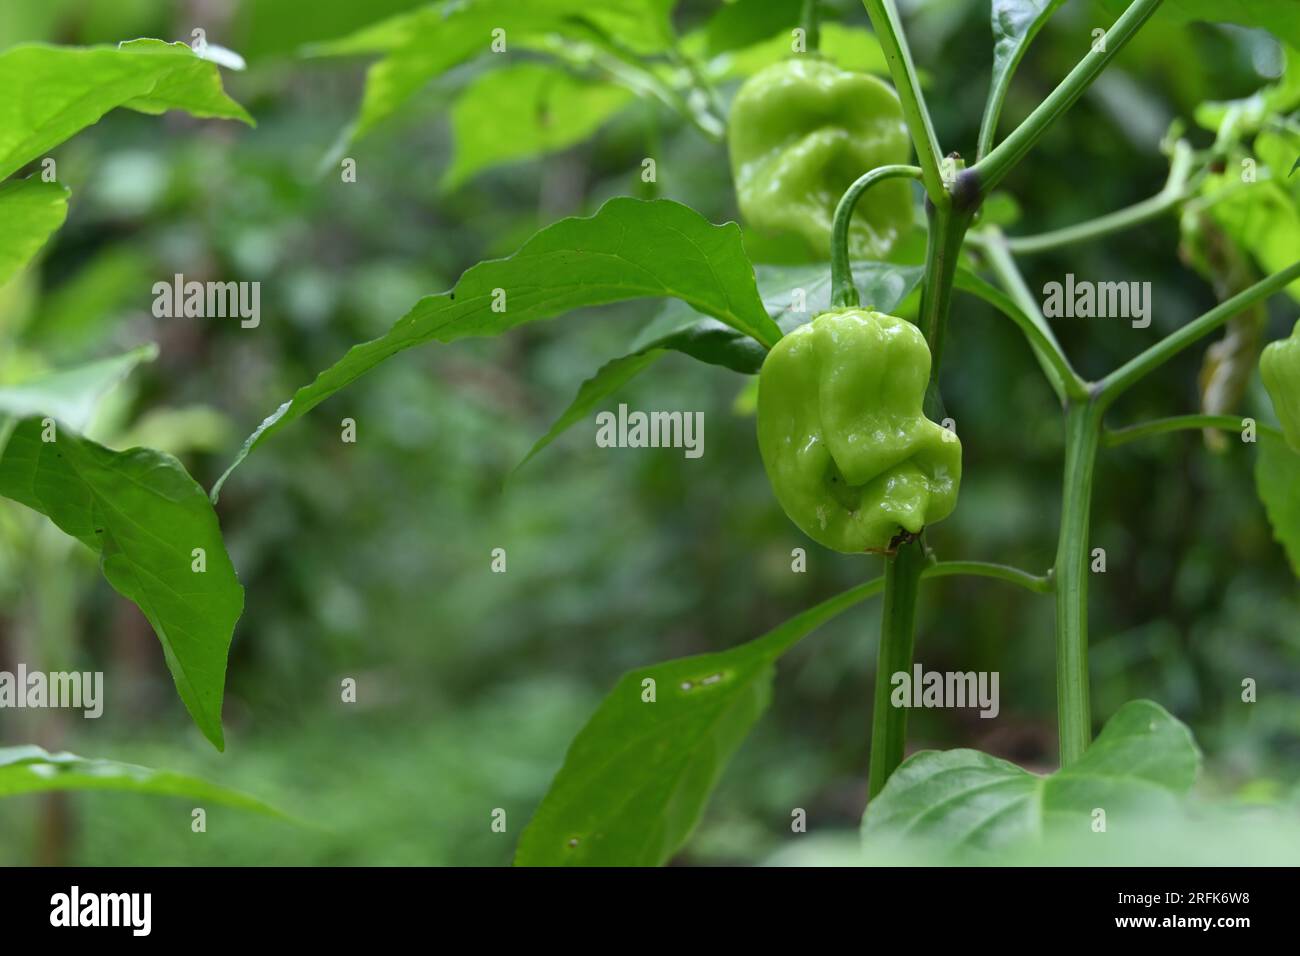 Vue d'un fruit de Chili Capsicum Chinense de couleur verte se développant sur la tige de la plante Chili Banque D'Images